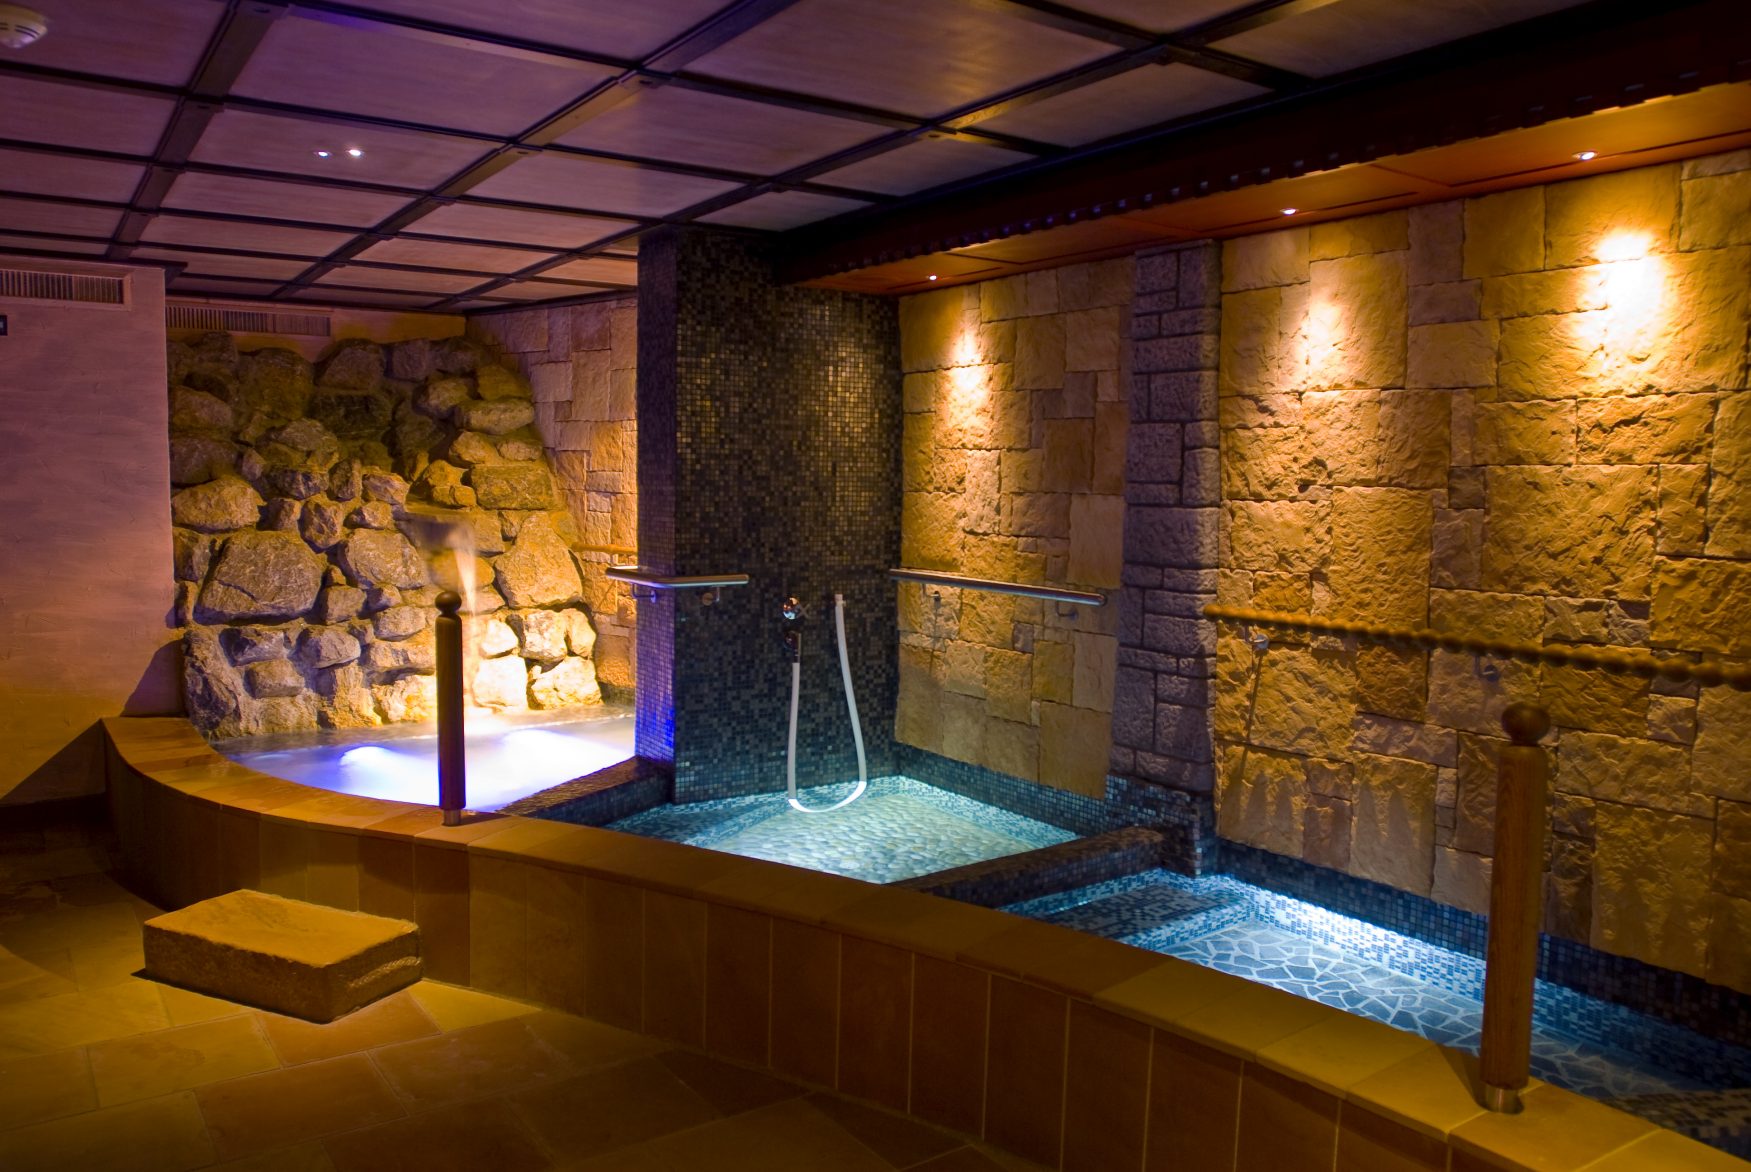 Die 7.000 qm große Wasser- und Saunawelt des 5-Sterne Wohlfühlhotels ist mit ihren fantasievollen Wasser-, Wärme- und Ruhezonen eine der vielfältigsten und exklusivsten in Österreich. Foto: PR/Posthotel